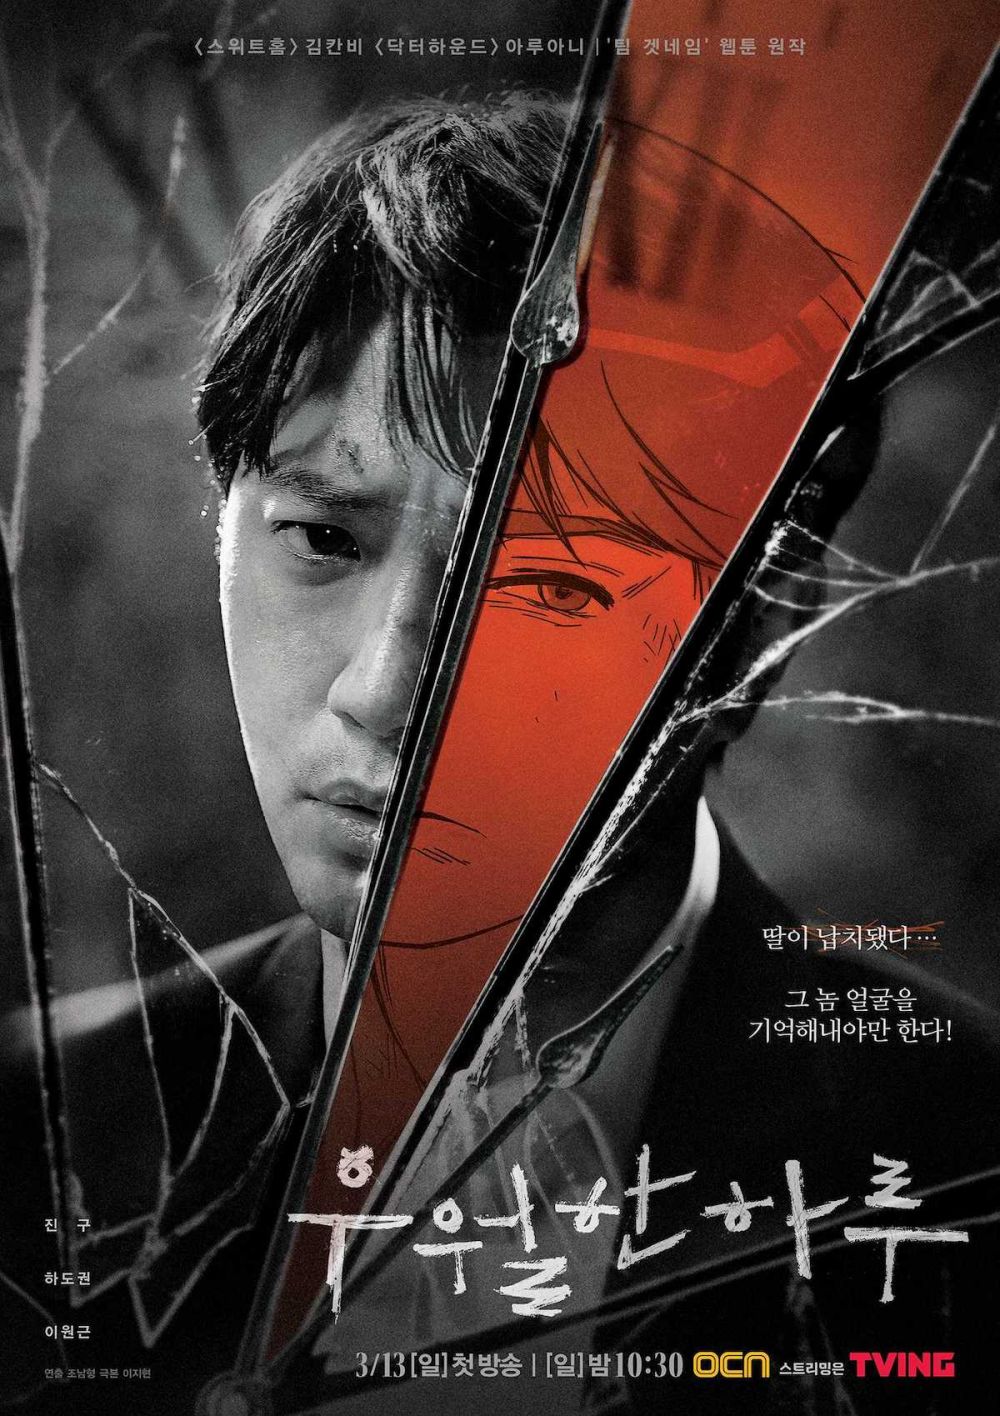 11 Drama Korea kisahkan aksi penyelamatan, penuh adegan menegangkan